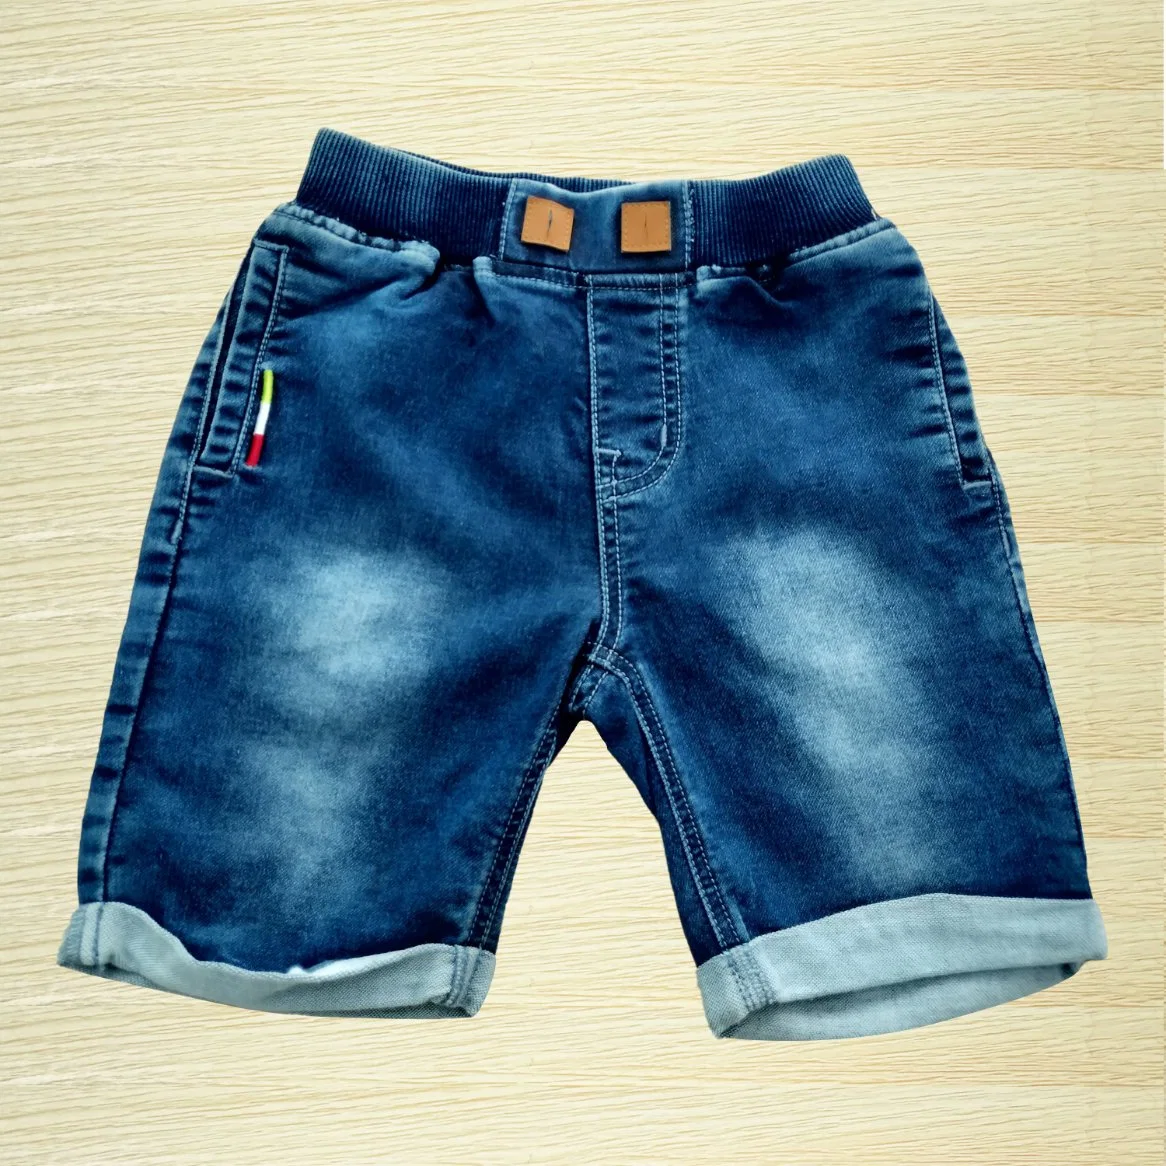 New Summer Children's Casual Pants pantalones cortos denim de algodón estampados para chicos